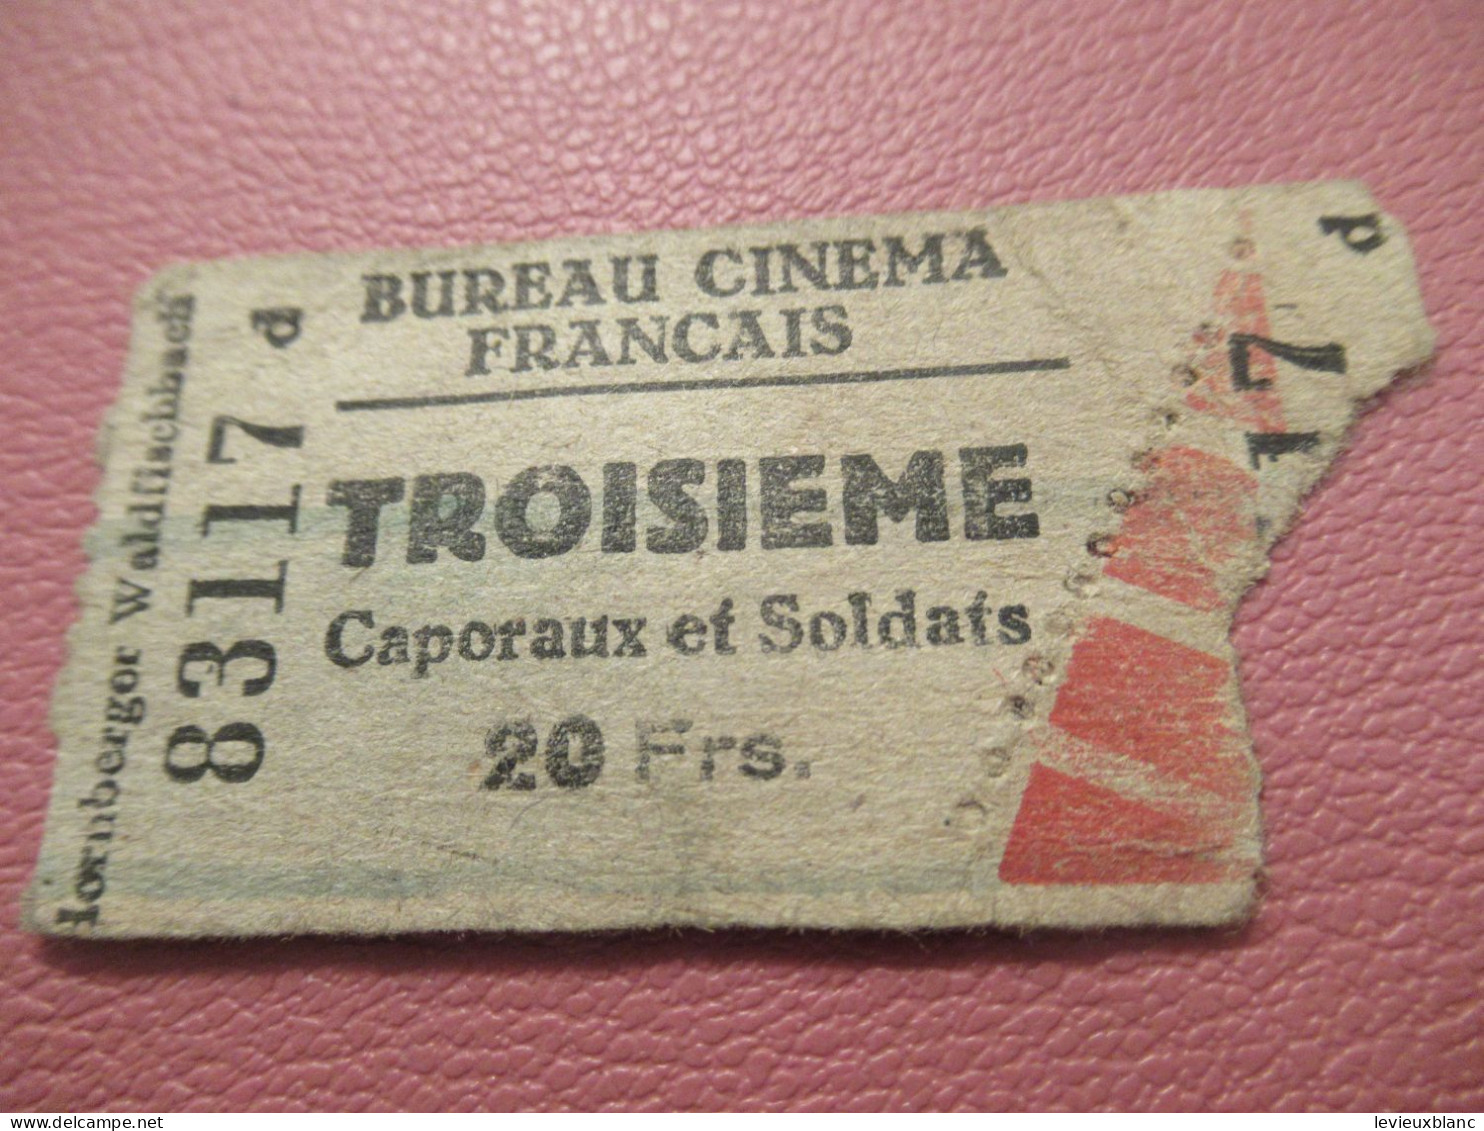 France / BUREAU CINEMA FRANCAIS/Troisième/ Caporaux Et Soldats /Lornberger Waldfischbach /1939-1945     TCK277 - Tickets D'entrée